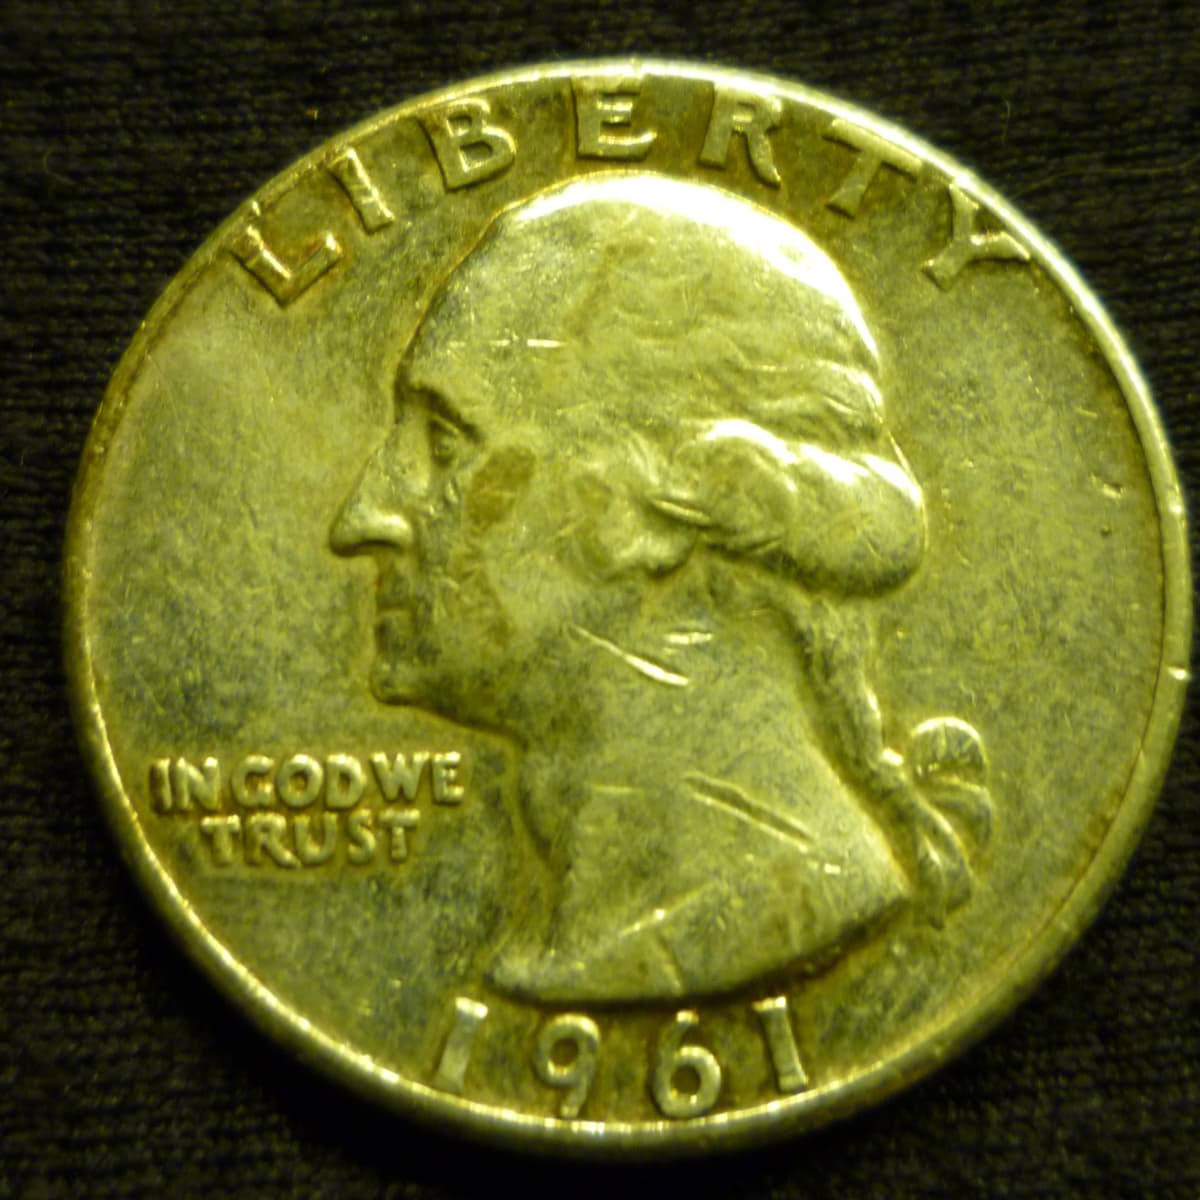 1950 Washington Quarter VF Very Fine 90% Silver 25c US Coin Collectible 